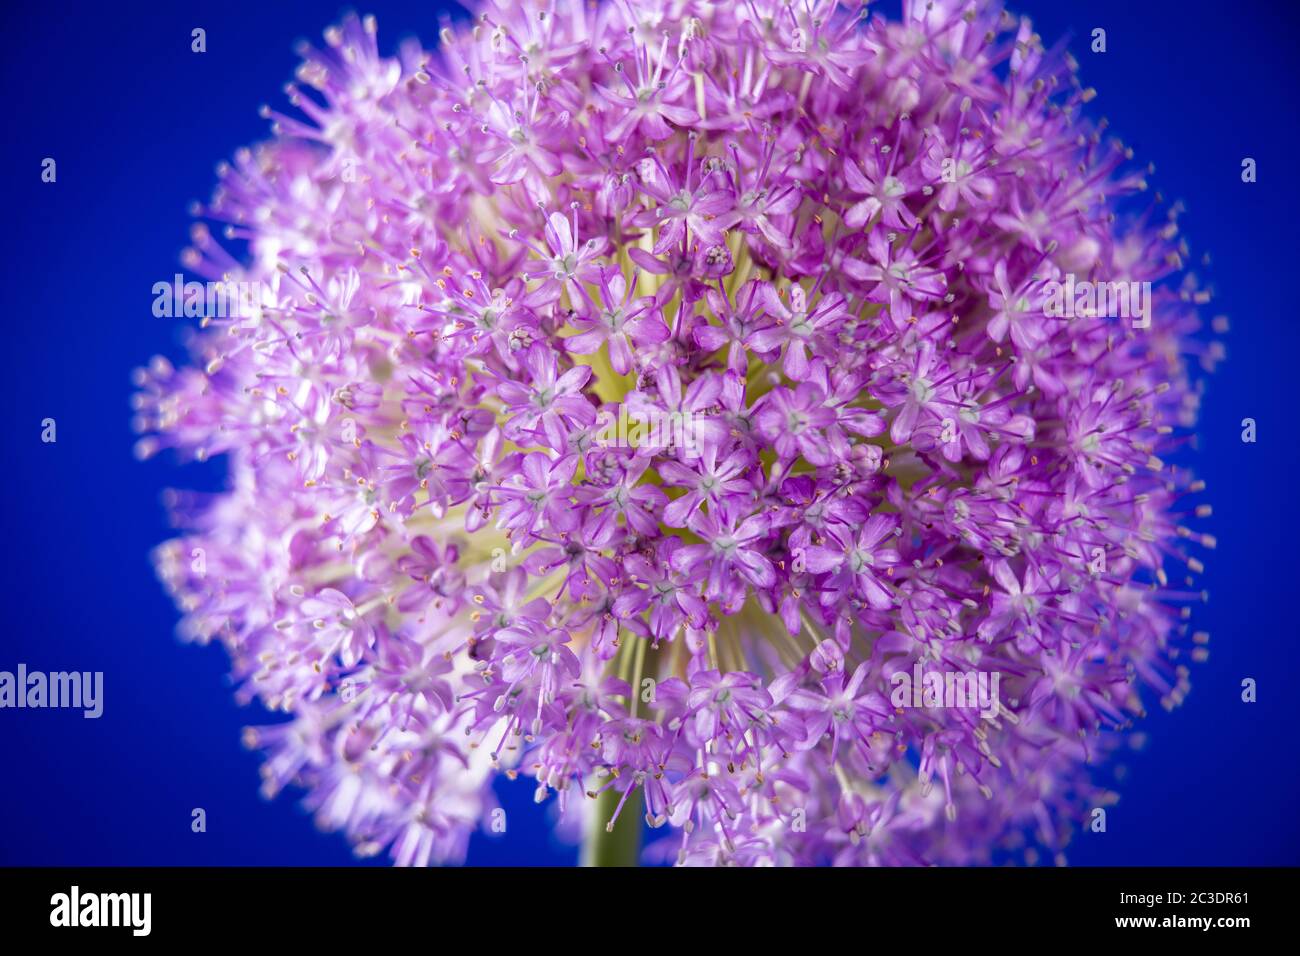 Ein einziger Allium, der in einem Garten in Warwickshire, England, Großbritannien angebaut wird. Allium ist eine Gattung von monokotyledonous blühenden Pflanzen, die Hunderte von Arten umfasst, einschließlich der kultivierten Zwiebel, Knoblauch, Frühlingszwiebel, Schalotte, Lauch und Schnittlauch. Der generische Name Allium ist das lateinische Wort für Knoblauch, und die Art der Gattung ist Allium sativum, was "kultivierter Knoblauch" bedeutet. Stockfoto